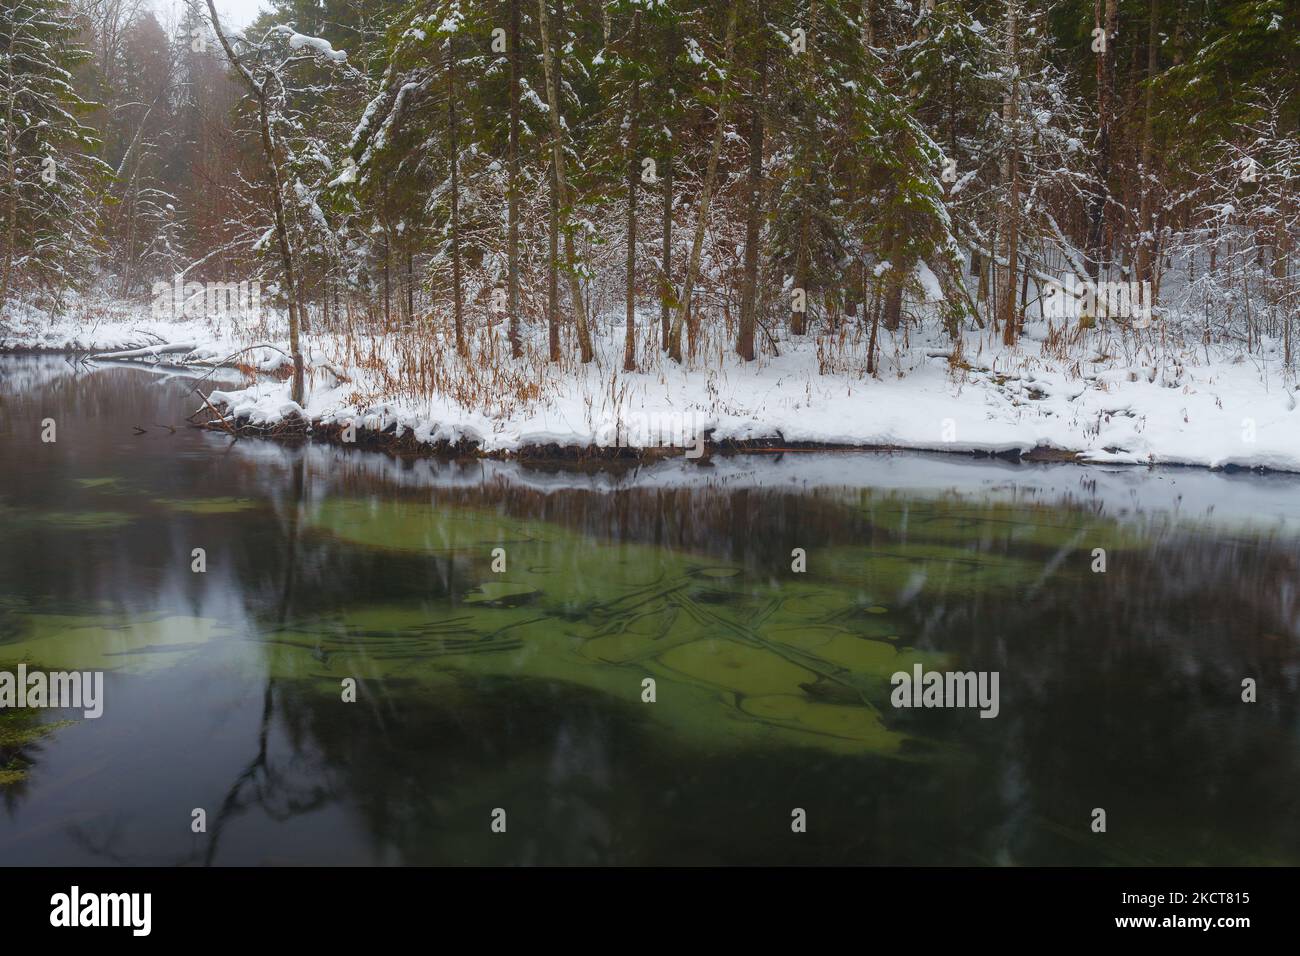 Sorgenti blu Saula (siniallikad in estone) in inverno nevoso Foto Stock